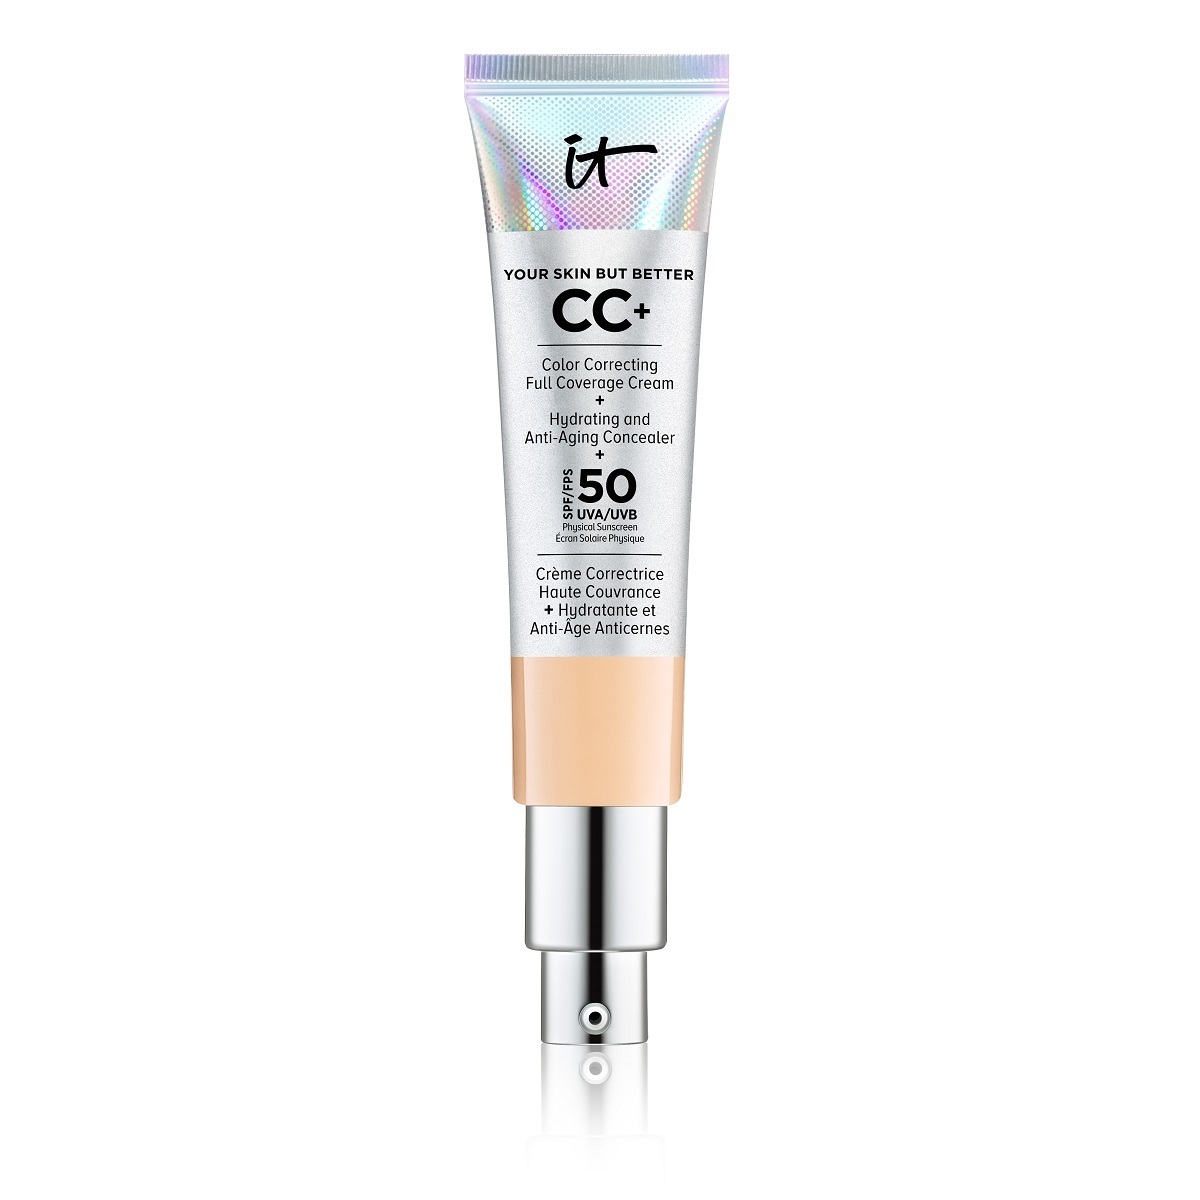 CC Cream de It Cosmetics (precio: 41,95 euros en Douglas)